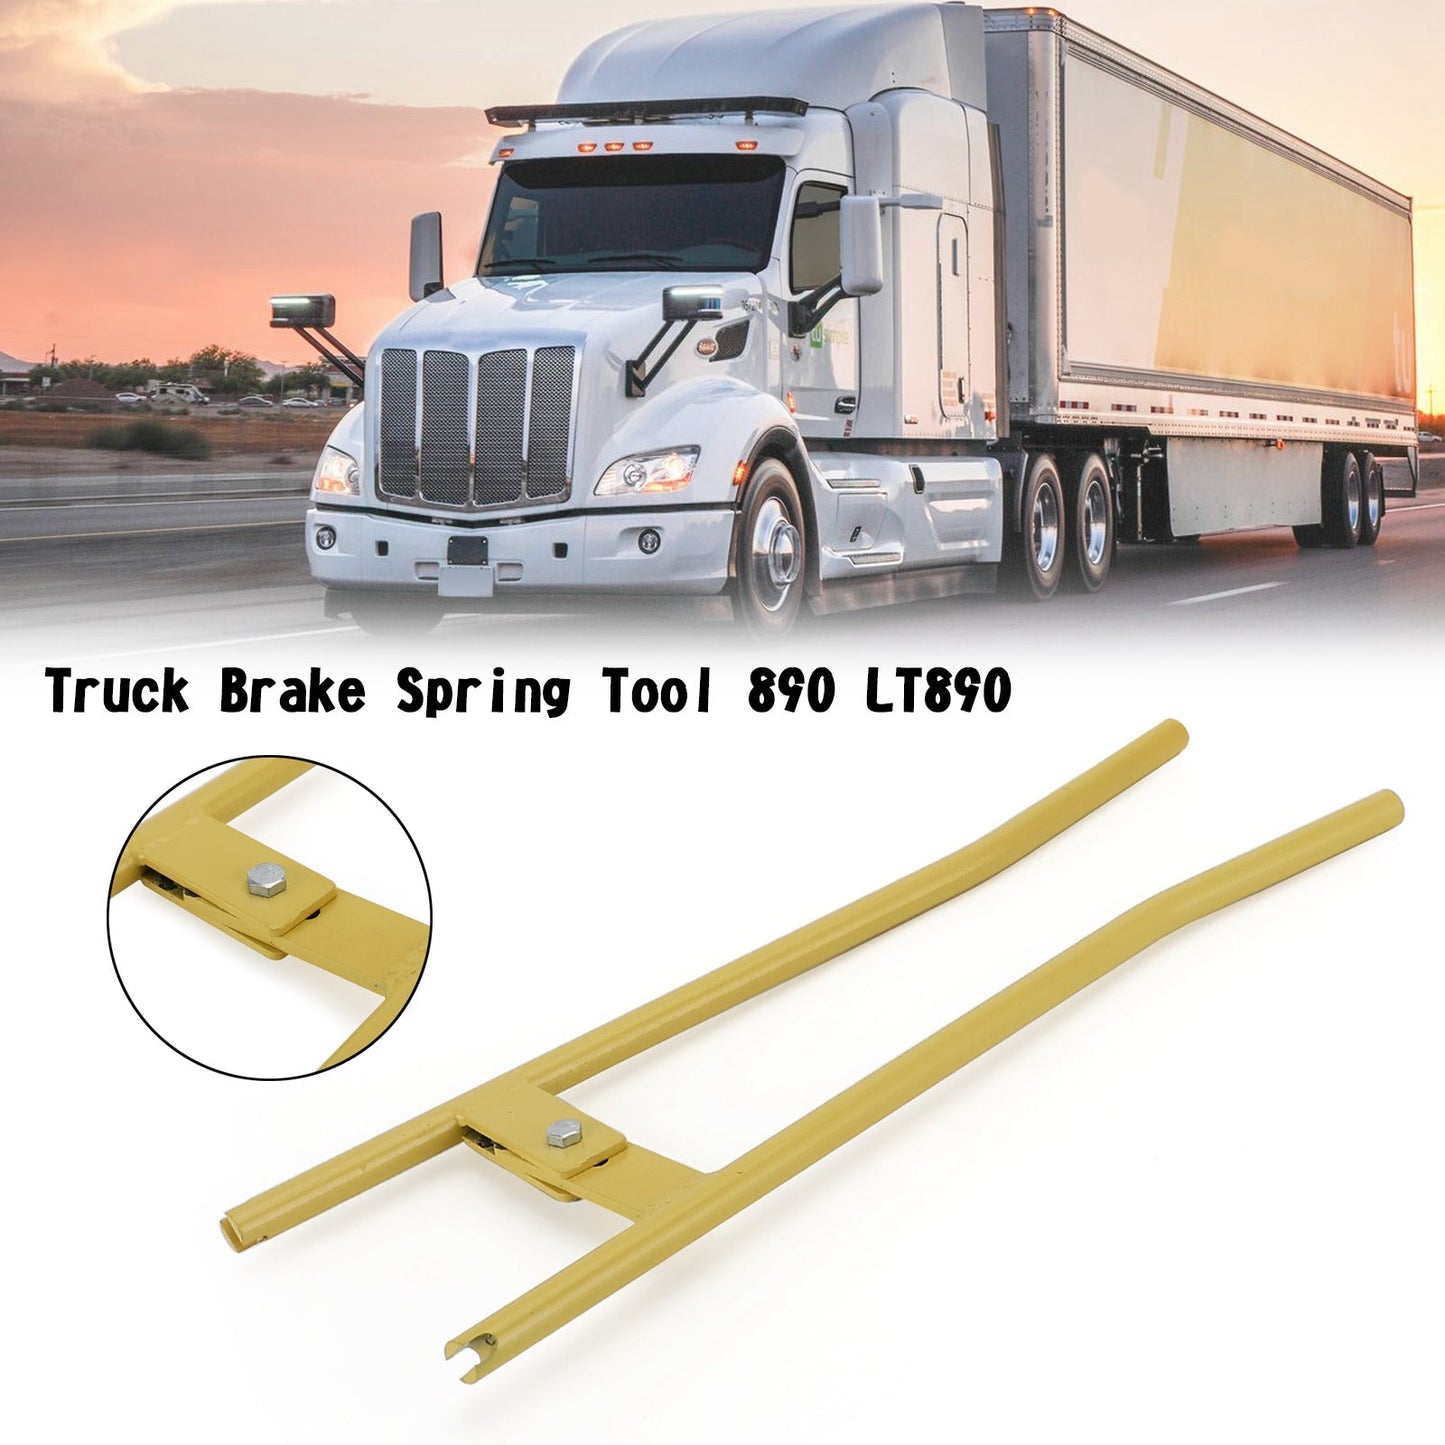 Truck Brake Spring Tool 890 LT890